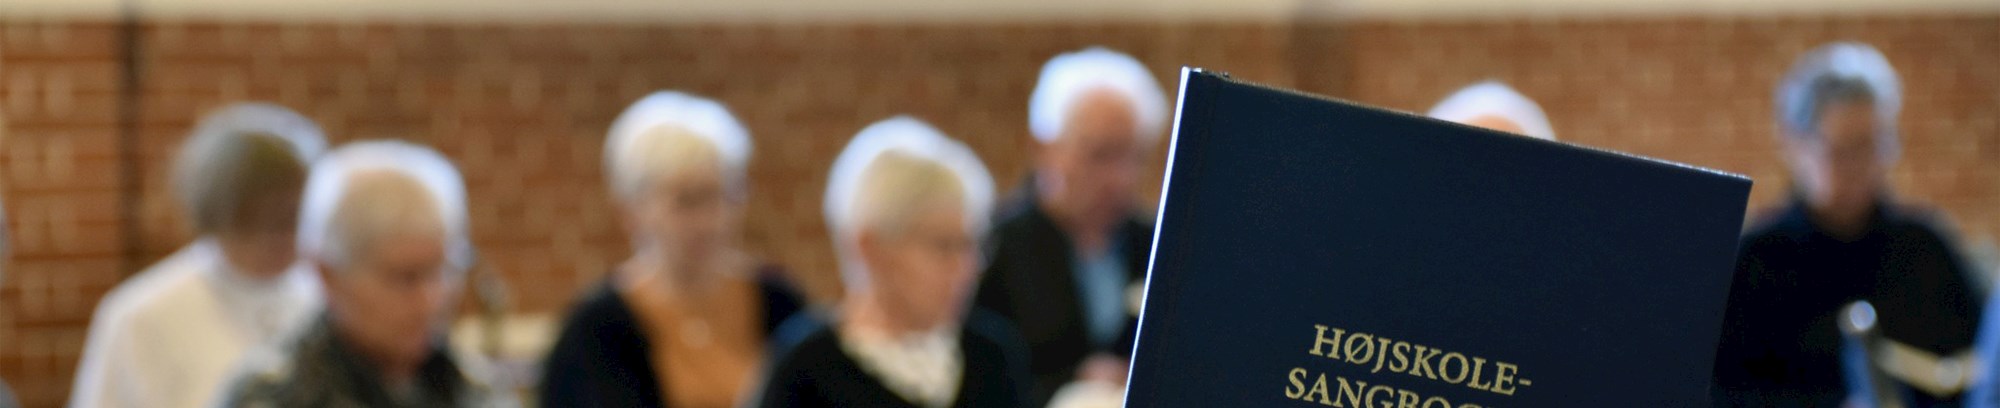 Højskolesangbogen i Emanuel i Skærbæk - med syngende personer i baggrunden